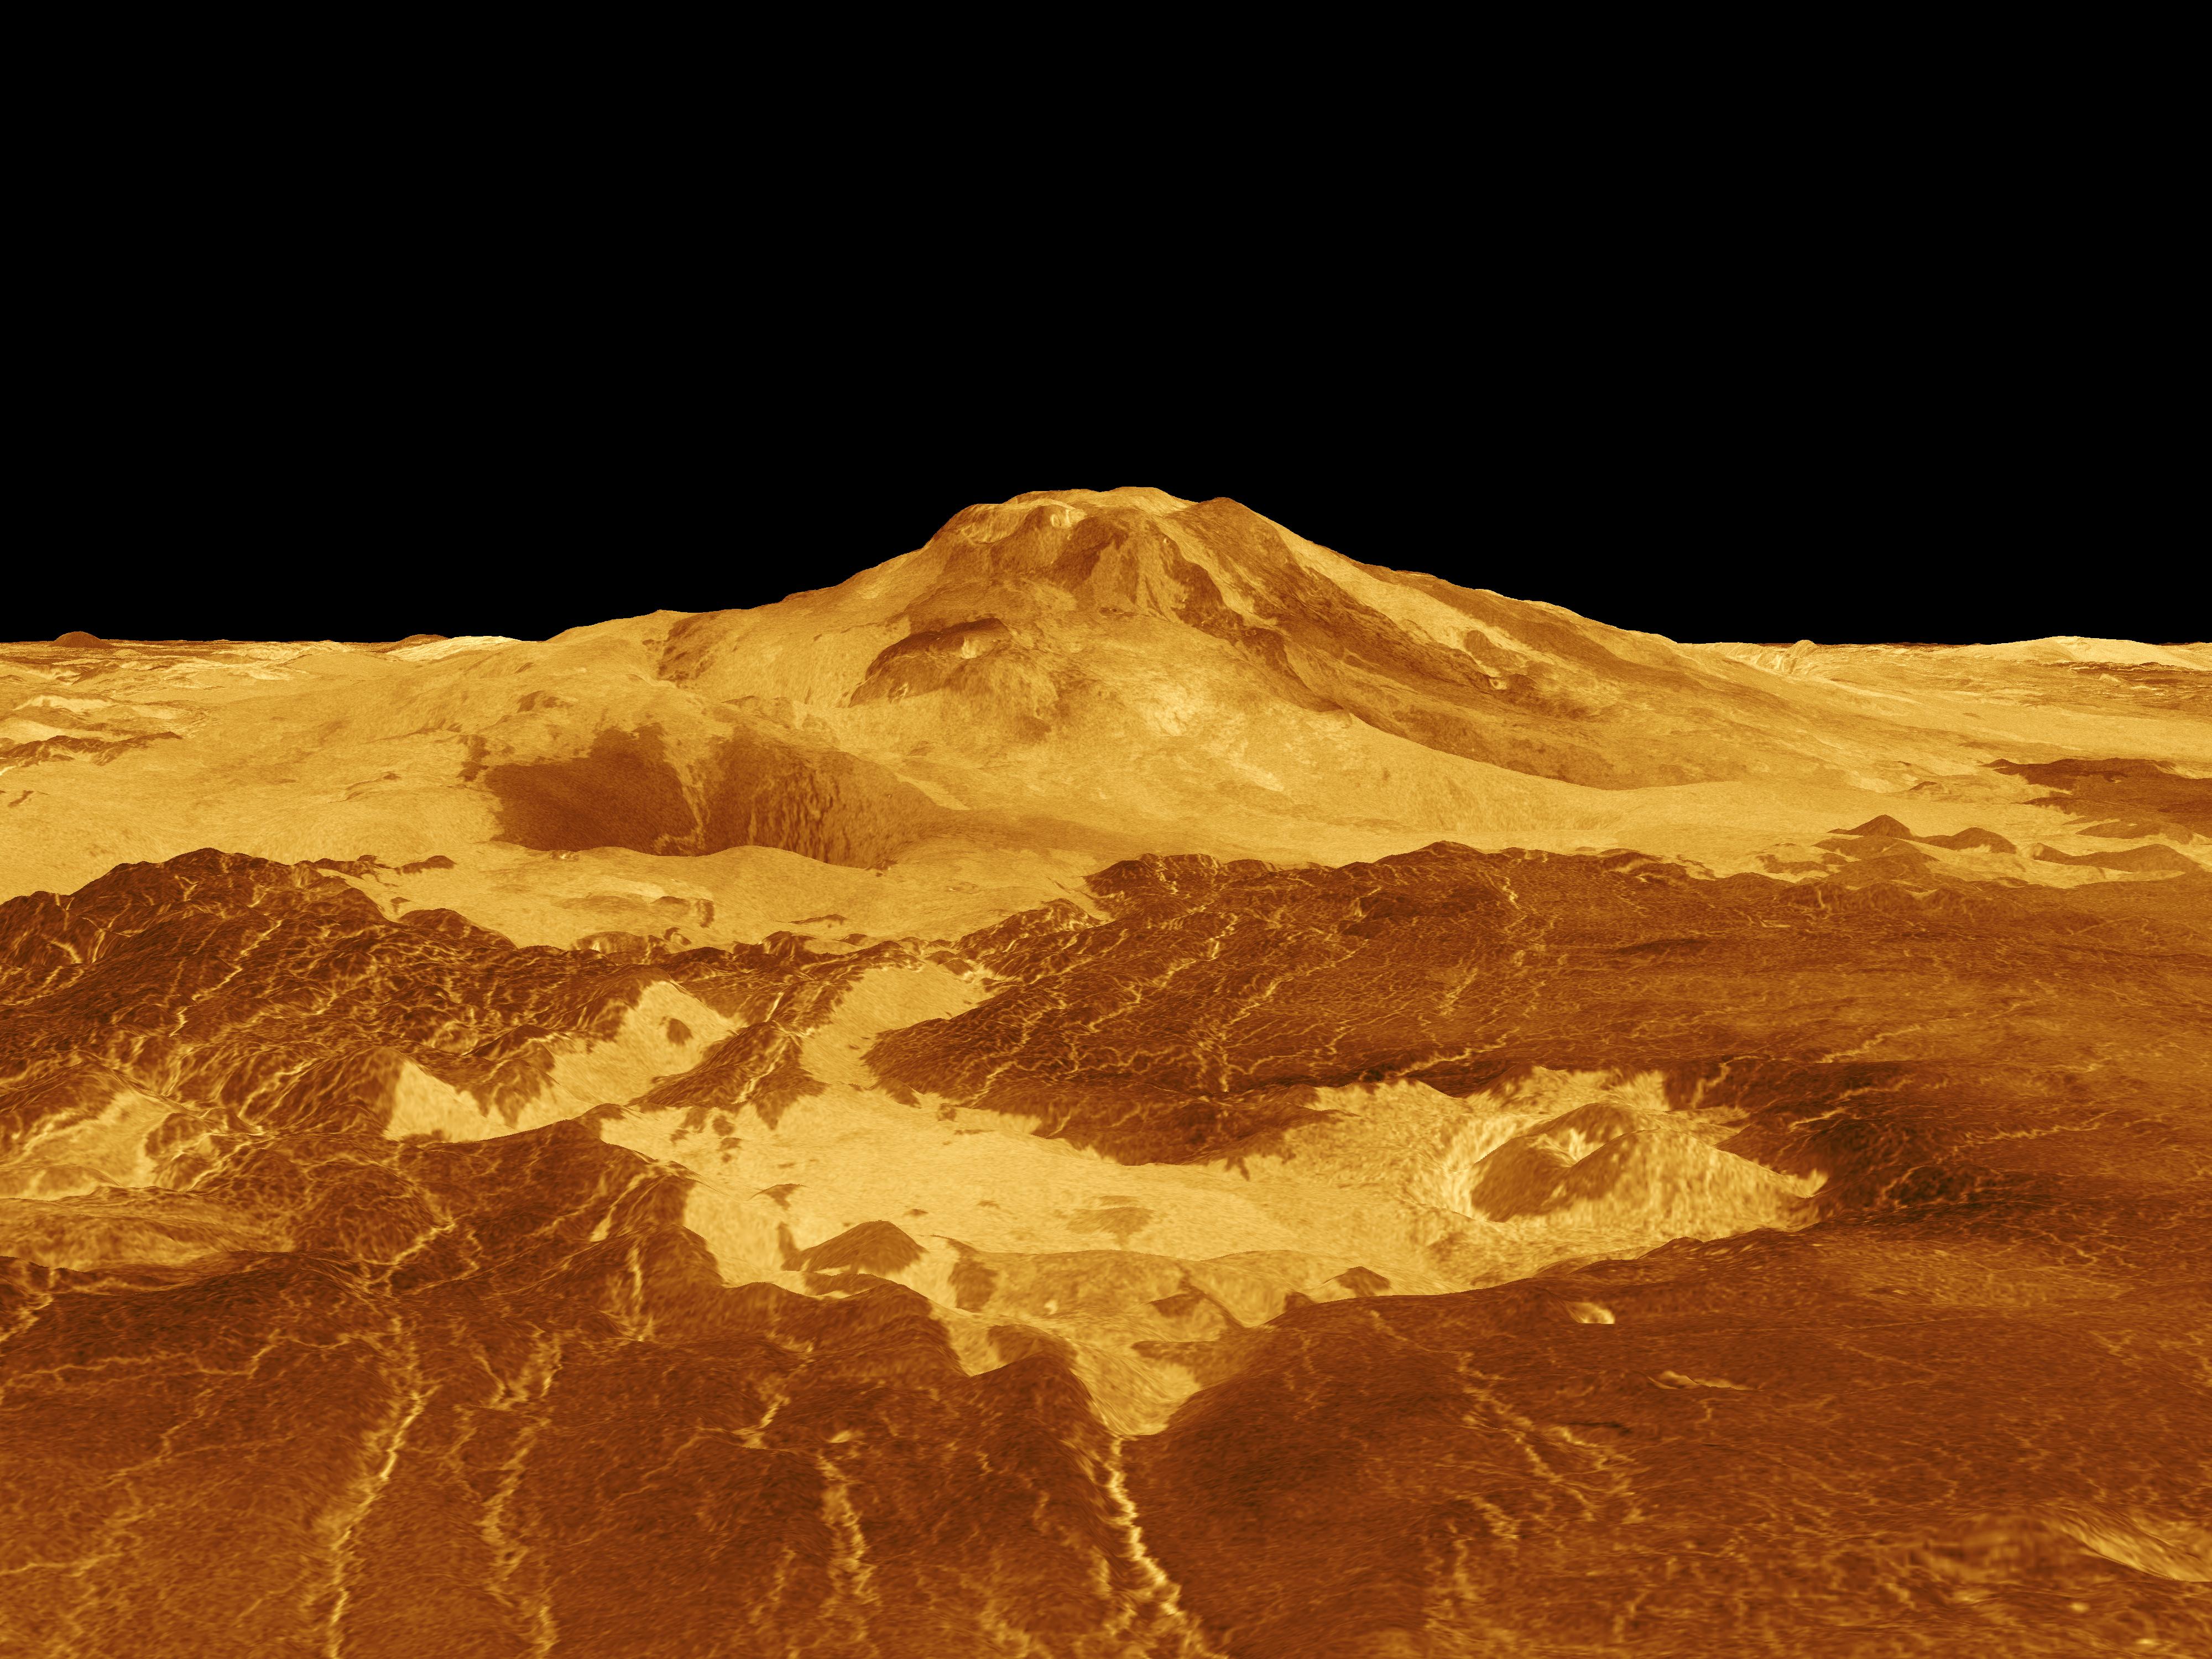 A Maat Mons vulkán a Vénusz felszínén, a Magellan űrszonda radaros méréseiből generált 3D képen. Forrás: NASA/JPL